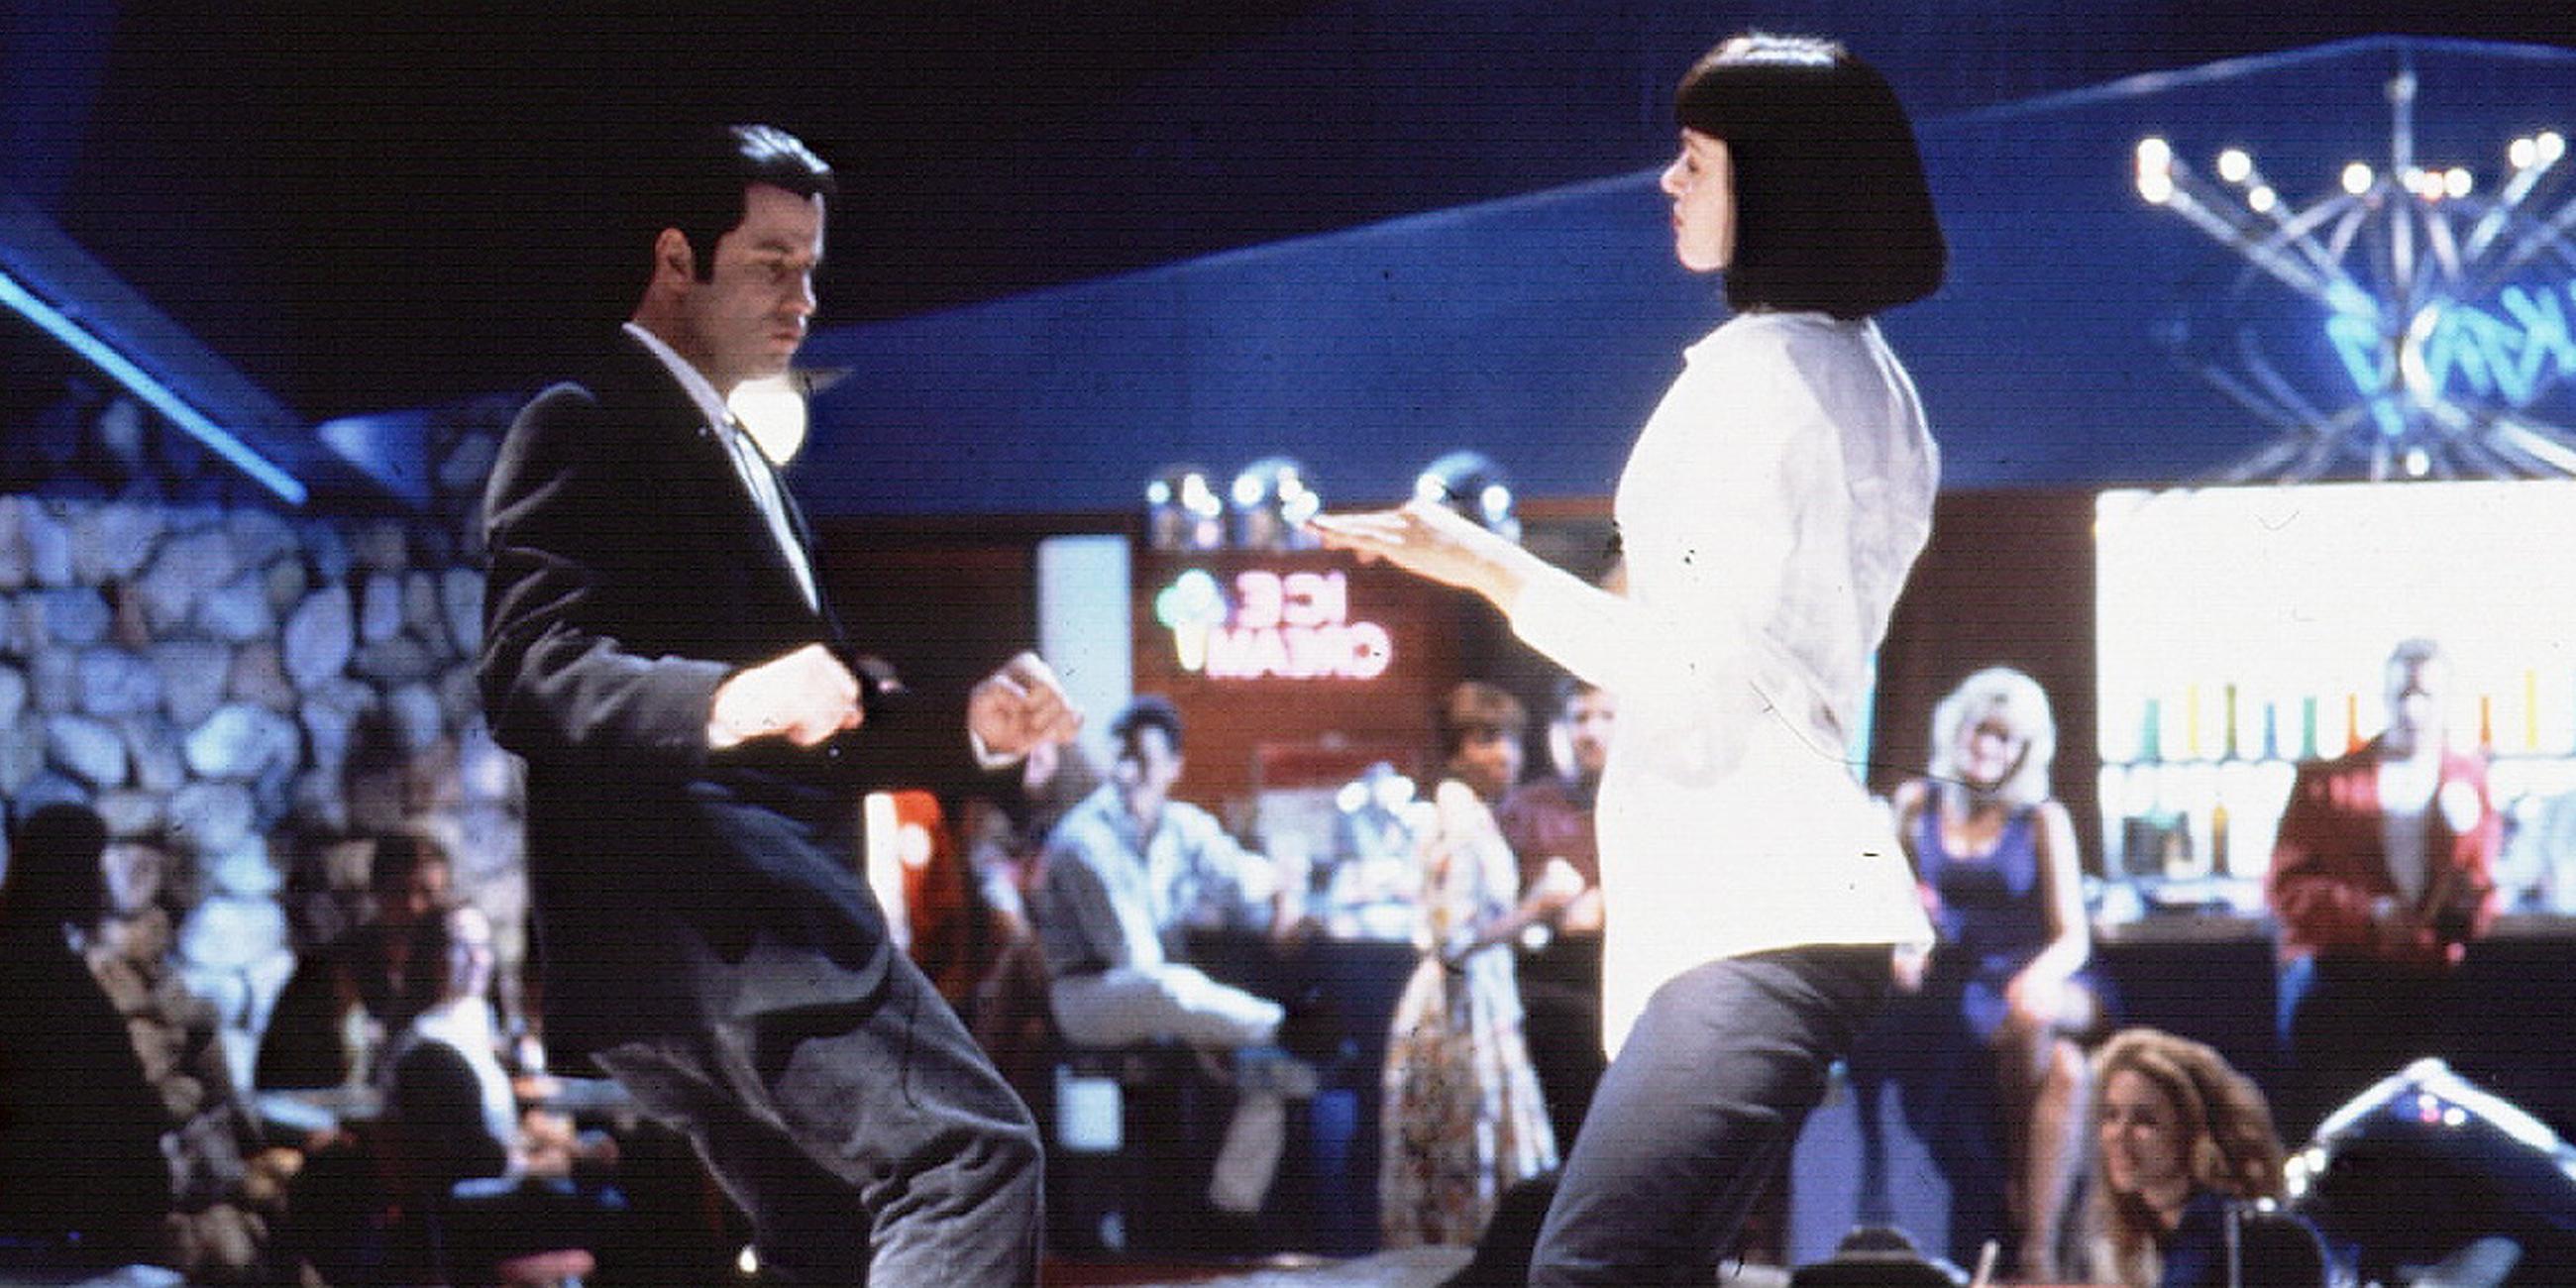 John Travolta (Vincent) und Uma Thurman (Mia) in einer Tanzszene des Films "Pulp Fiction" (undatierte Filmszene).